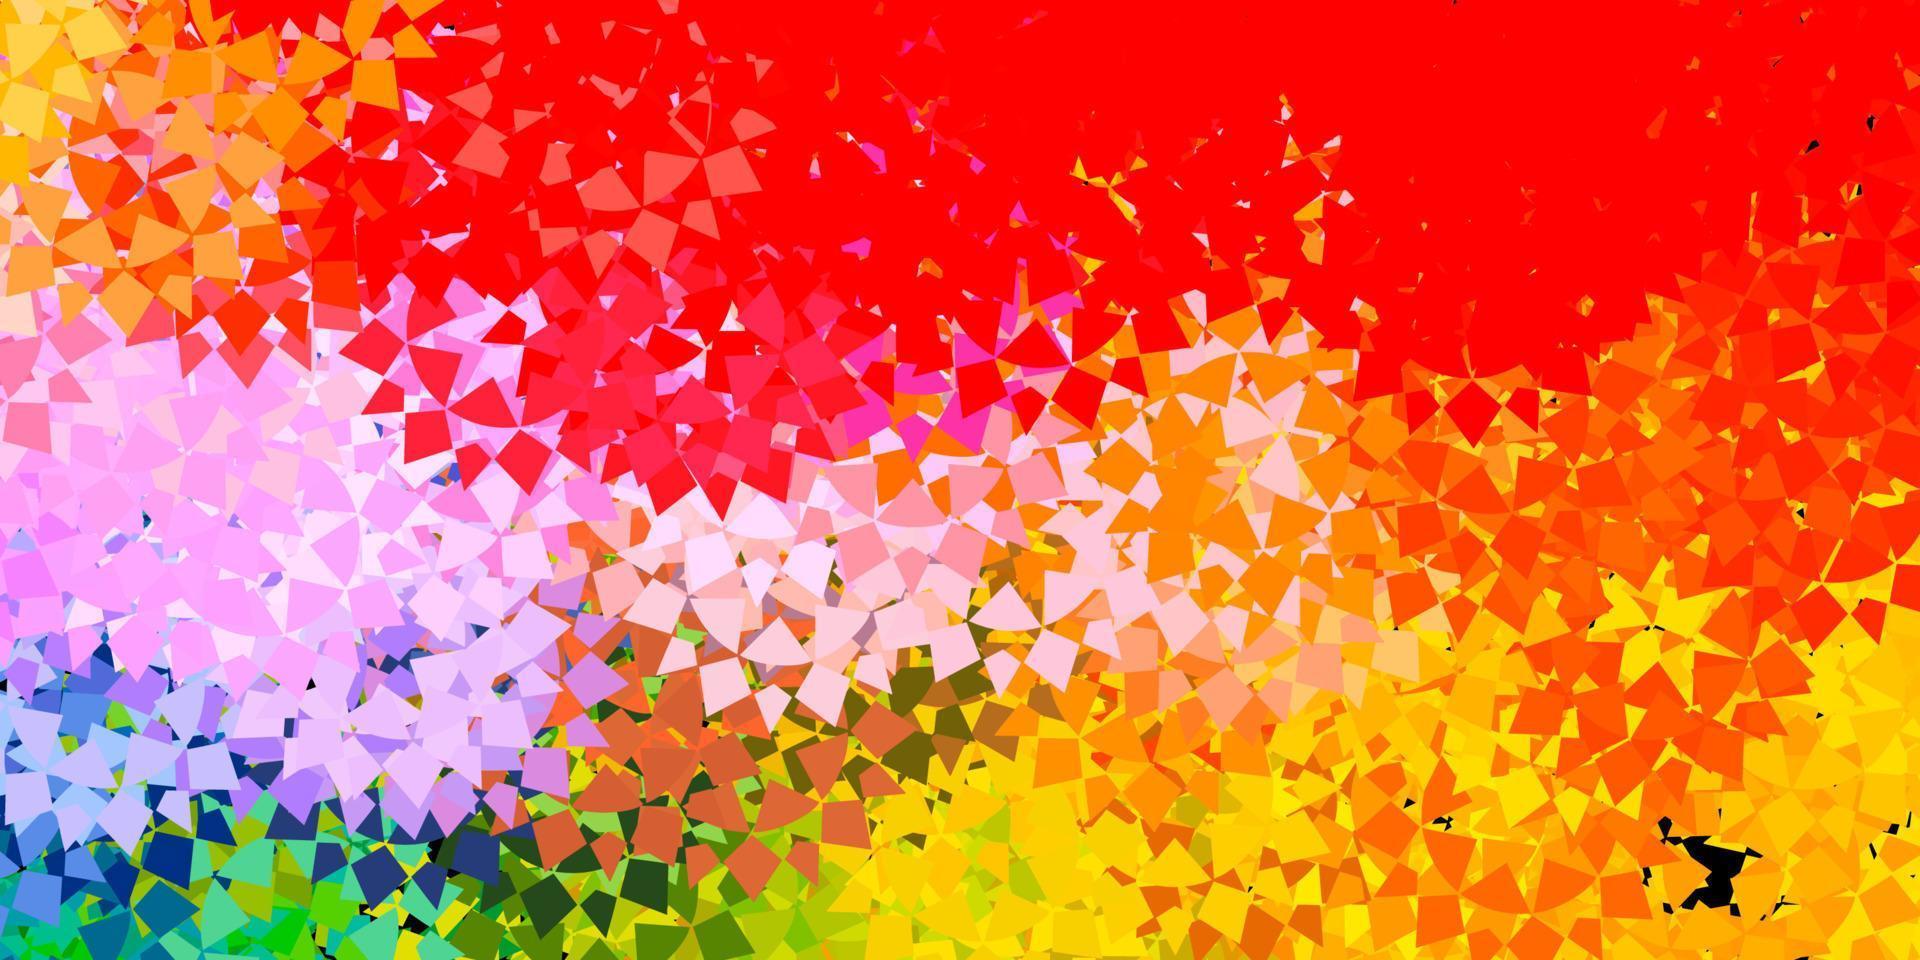 modèle de vecteur multicolore clair avec des formes triangulaires.